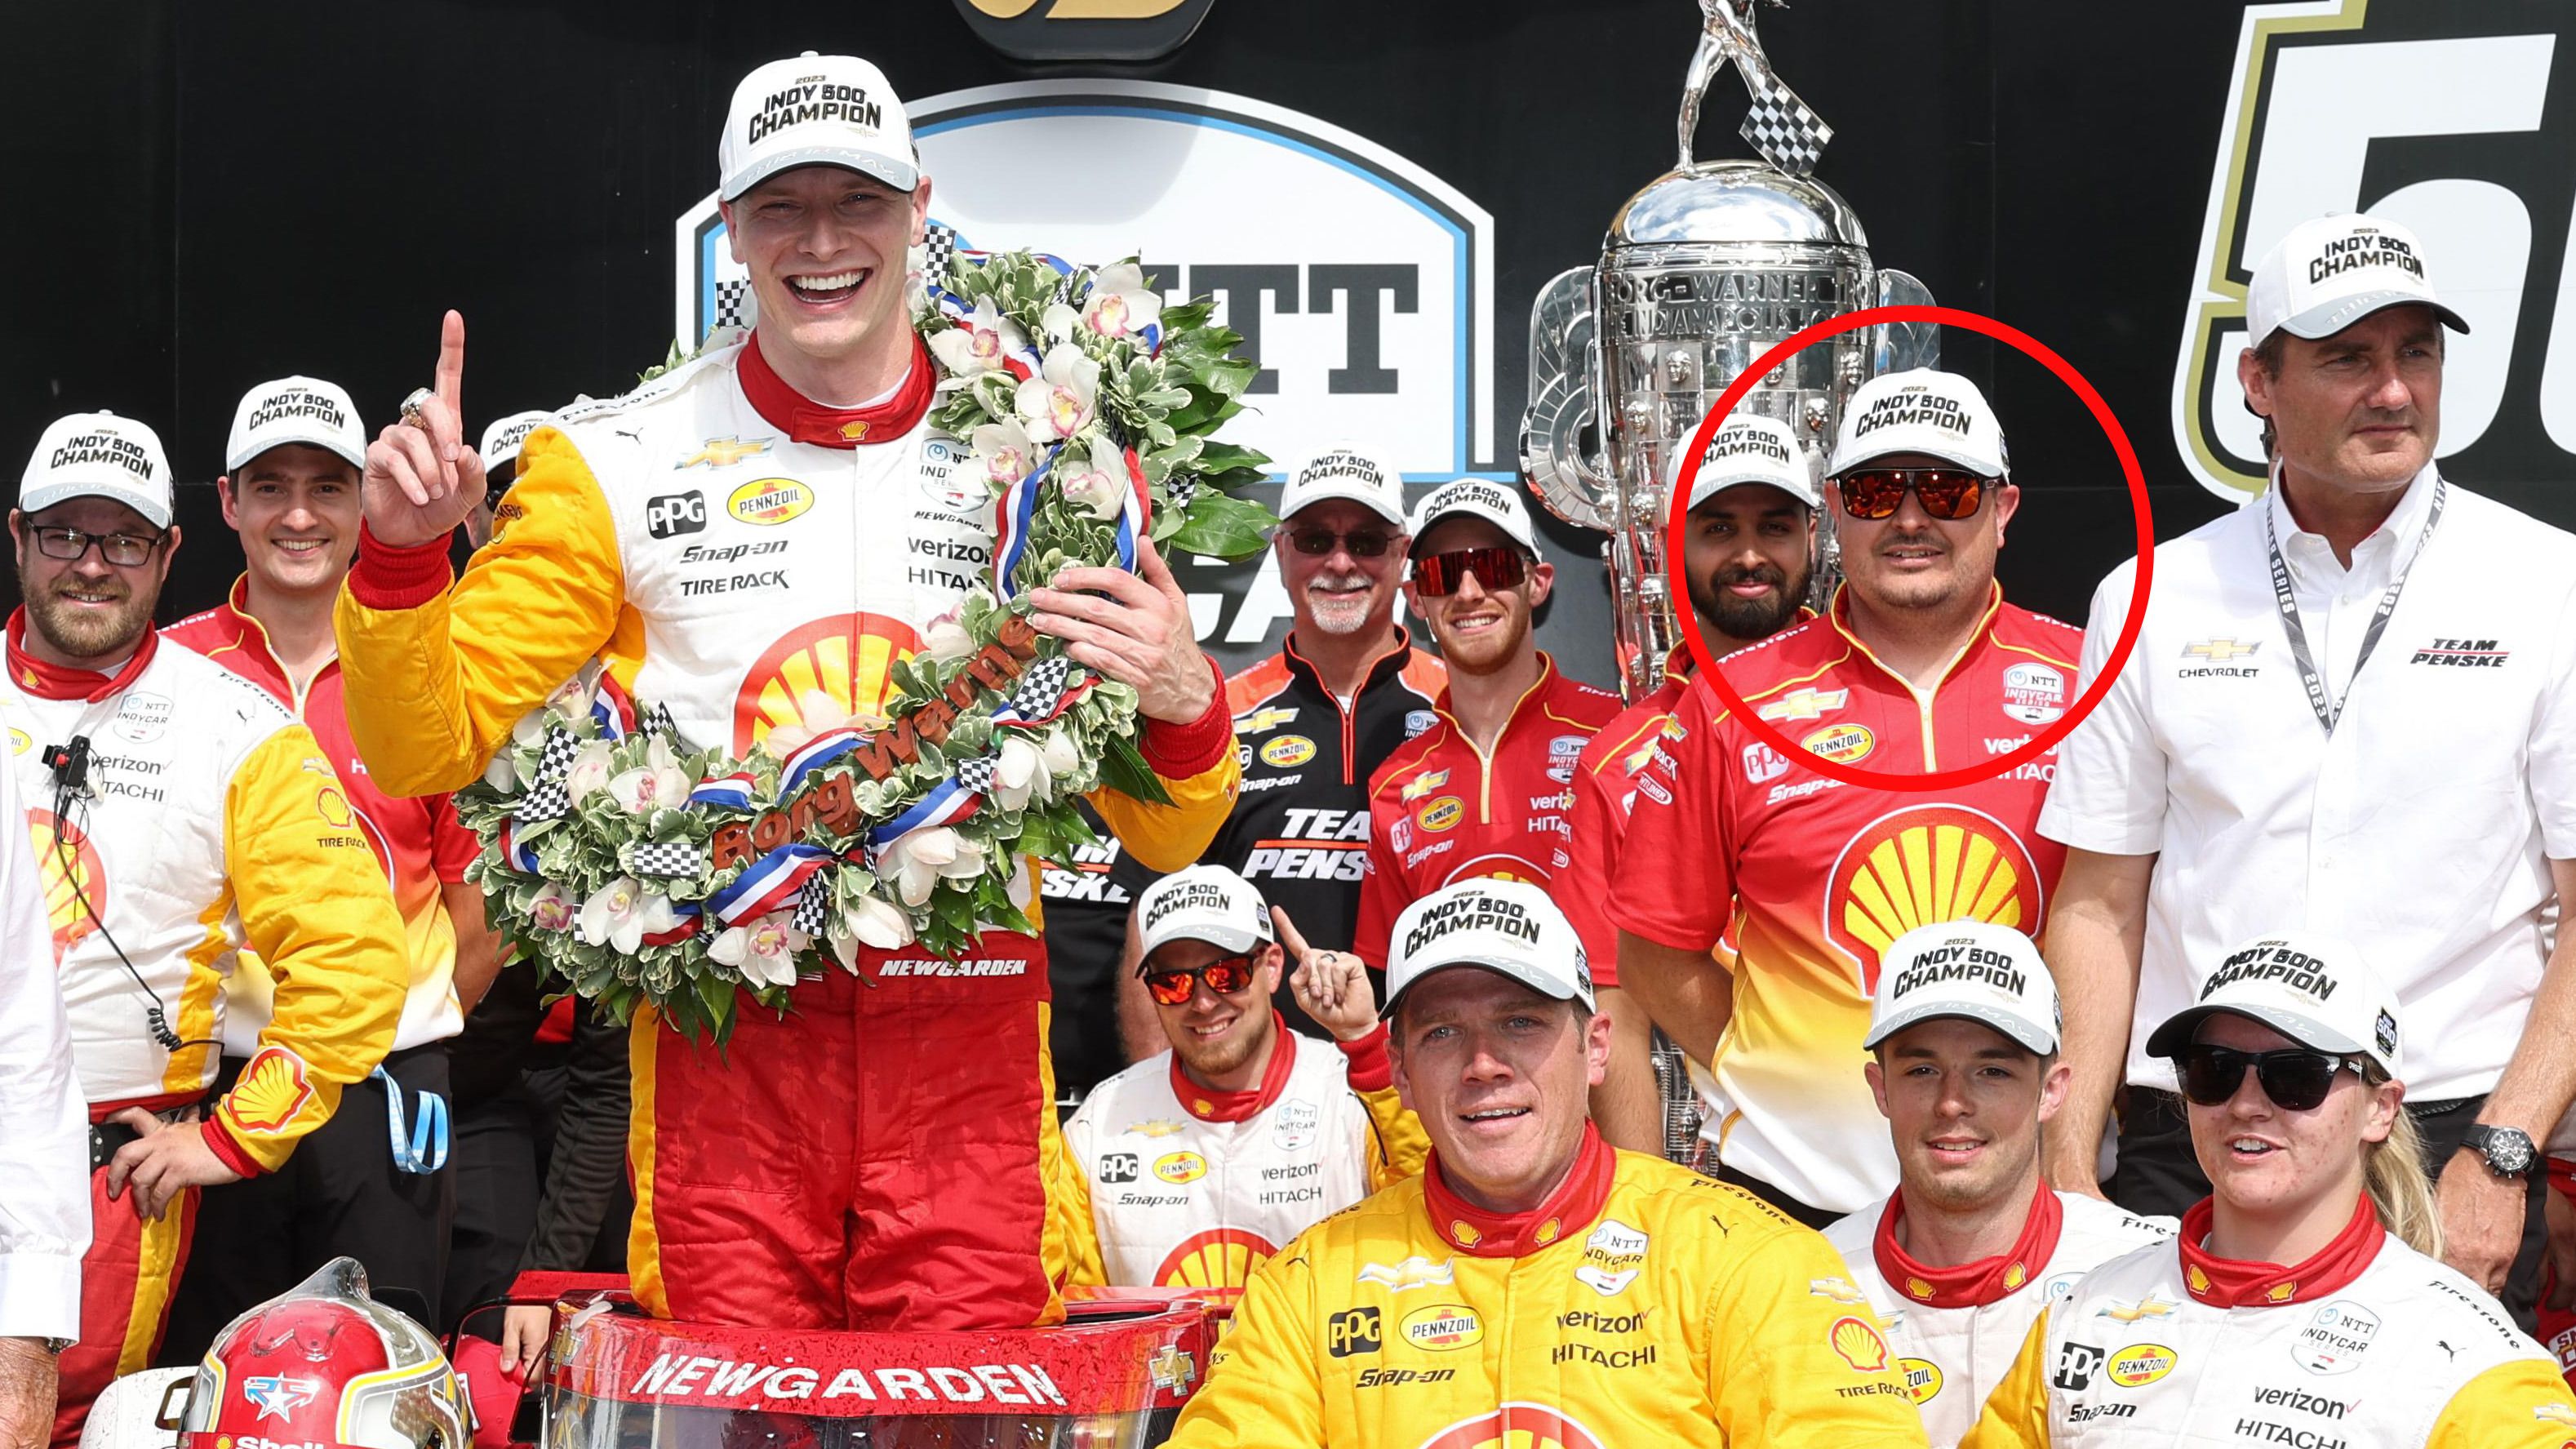 Luke Mason (circled) celebrates with Team Penske after Josef Newgarden won the Indianapolis 500.